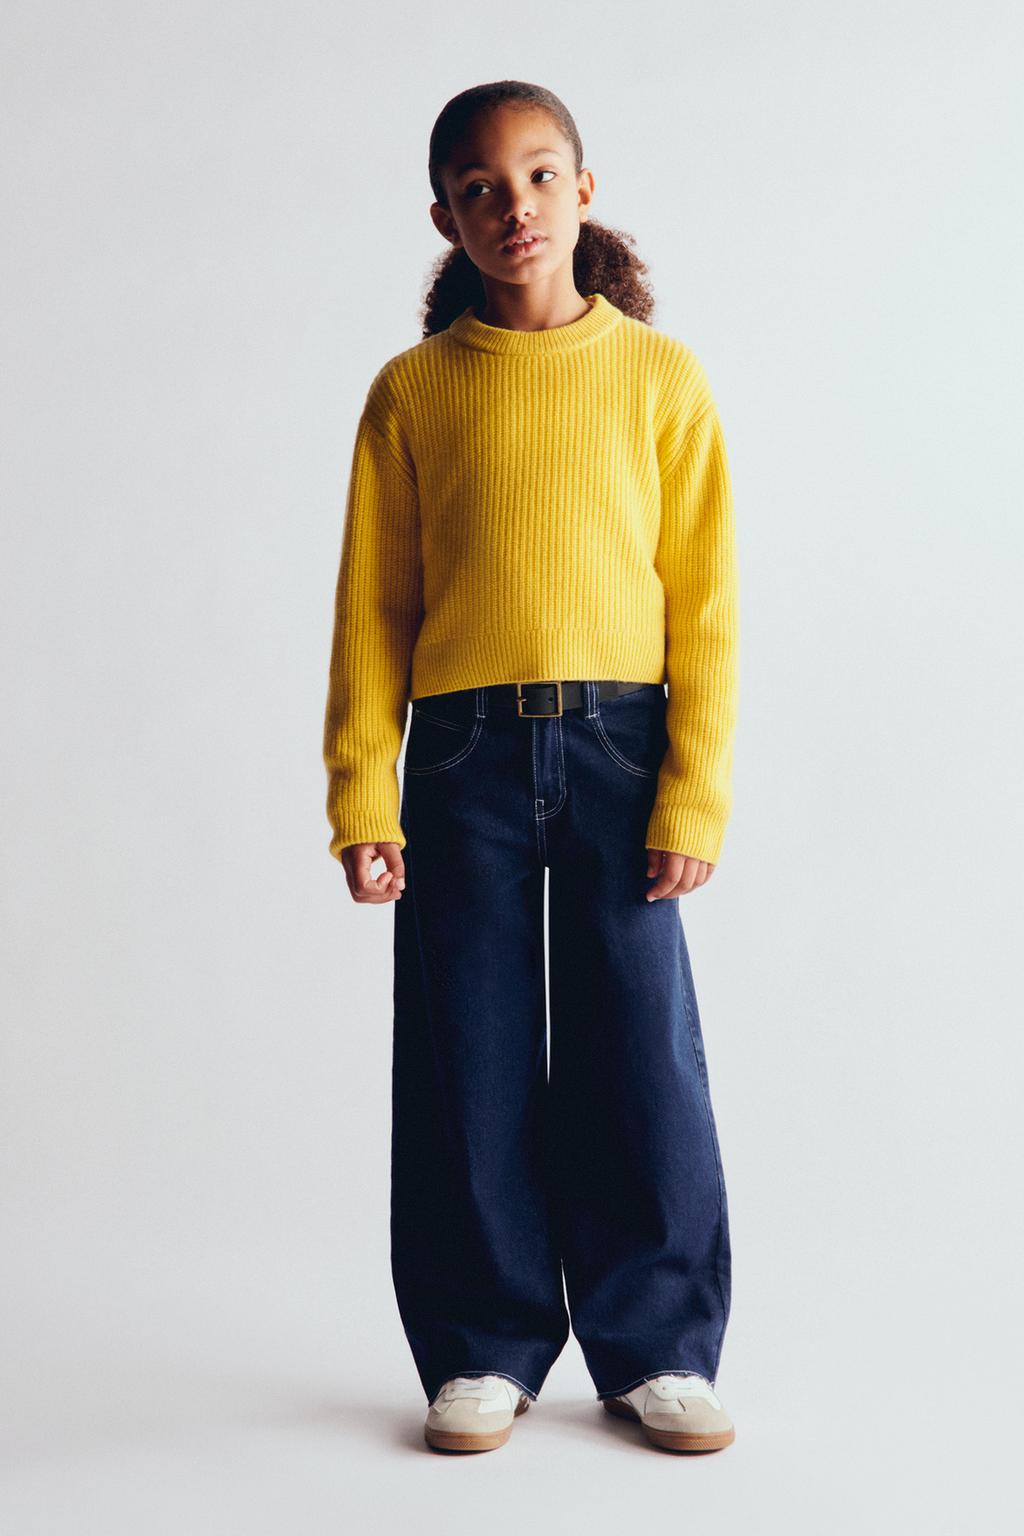 Трикотажный свитер из 100% шерсти ZARA, грейпфрутовый желтый